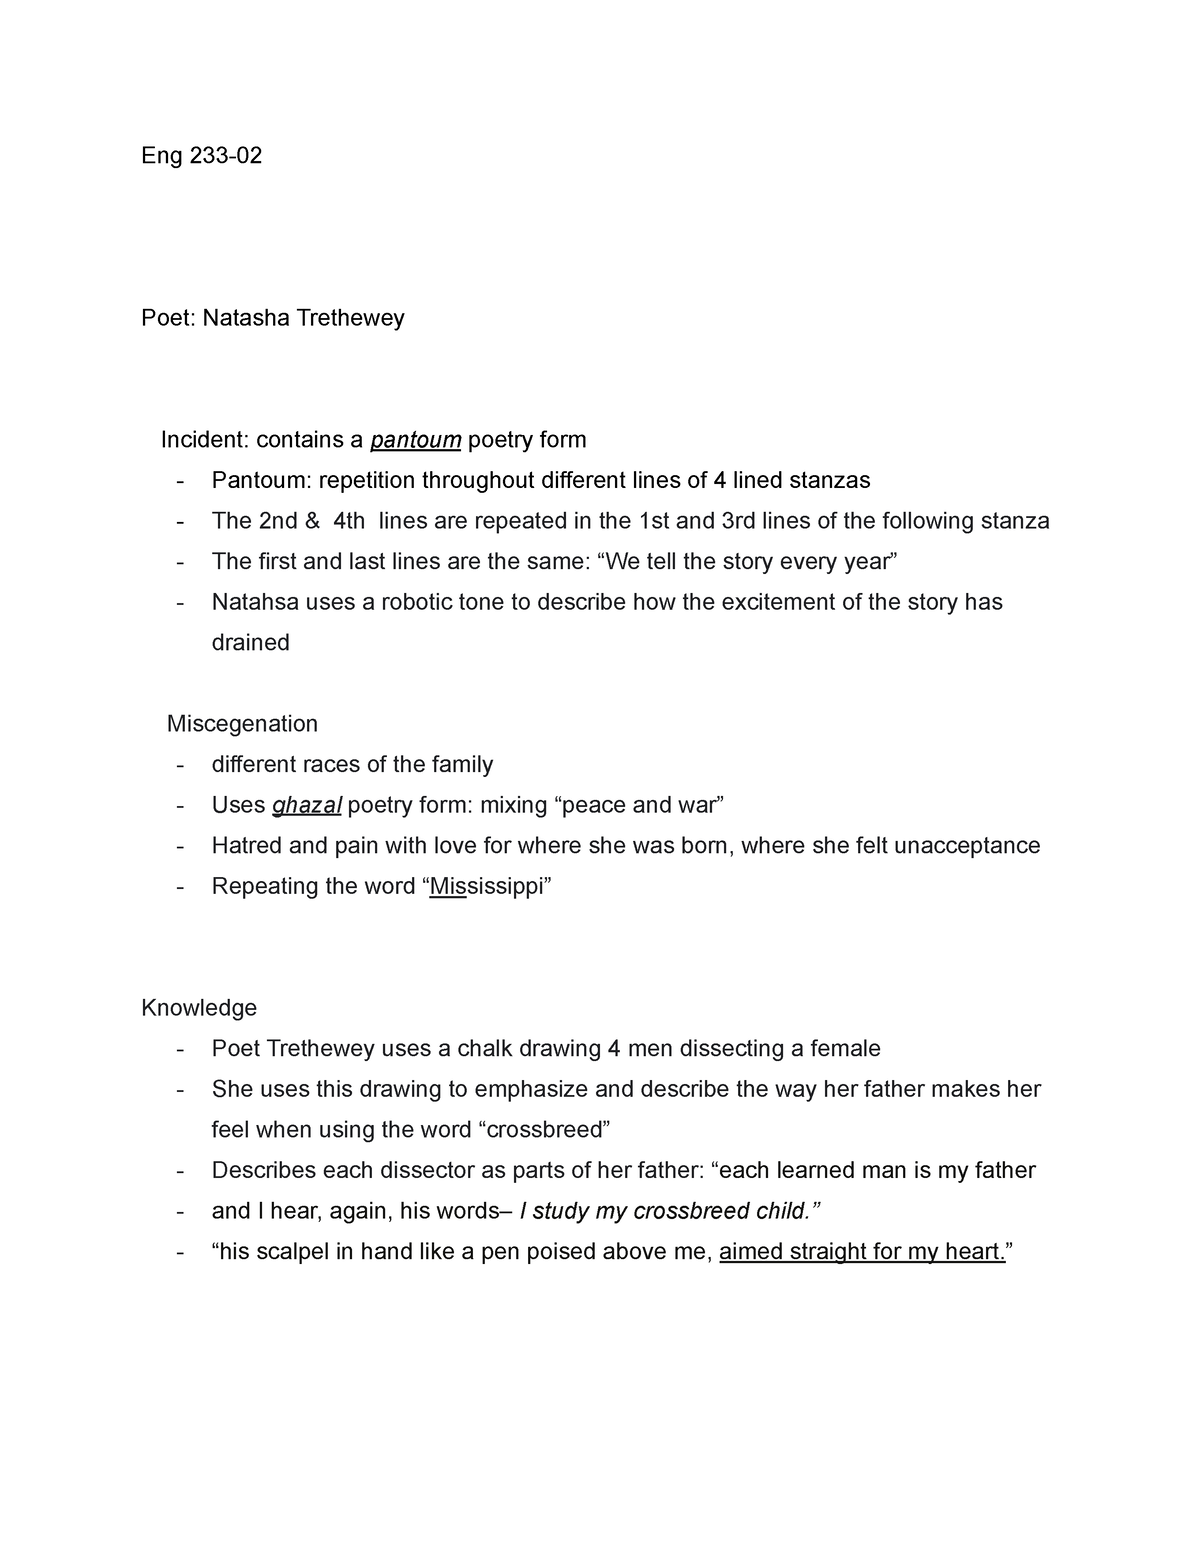 Eng 233 Lecture Notes - Eng 233- Poet: Natasha Trethewey Incident ...